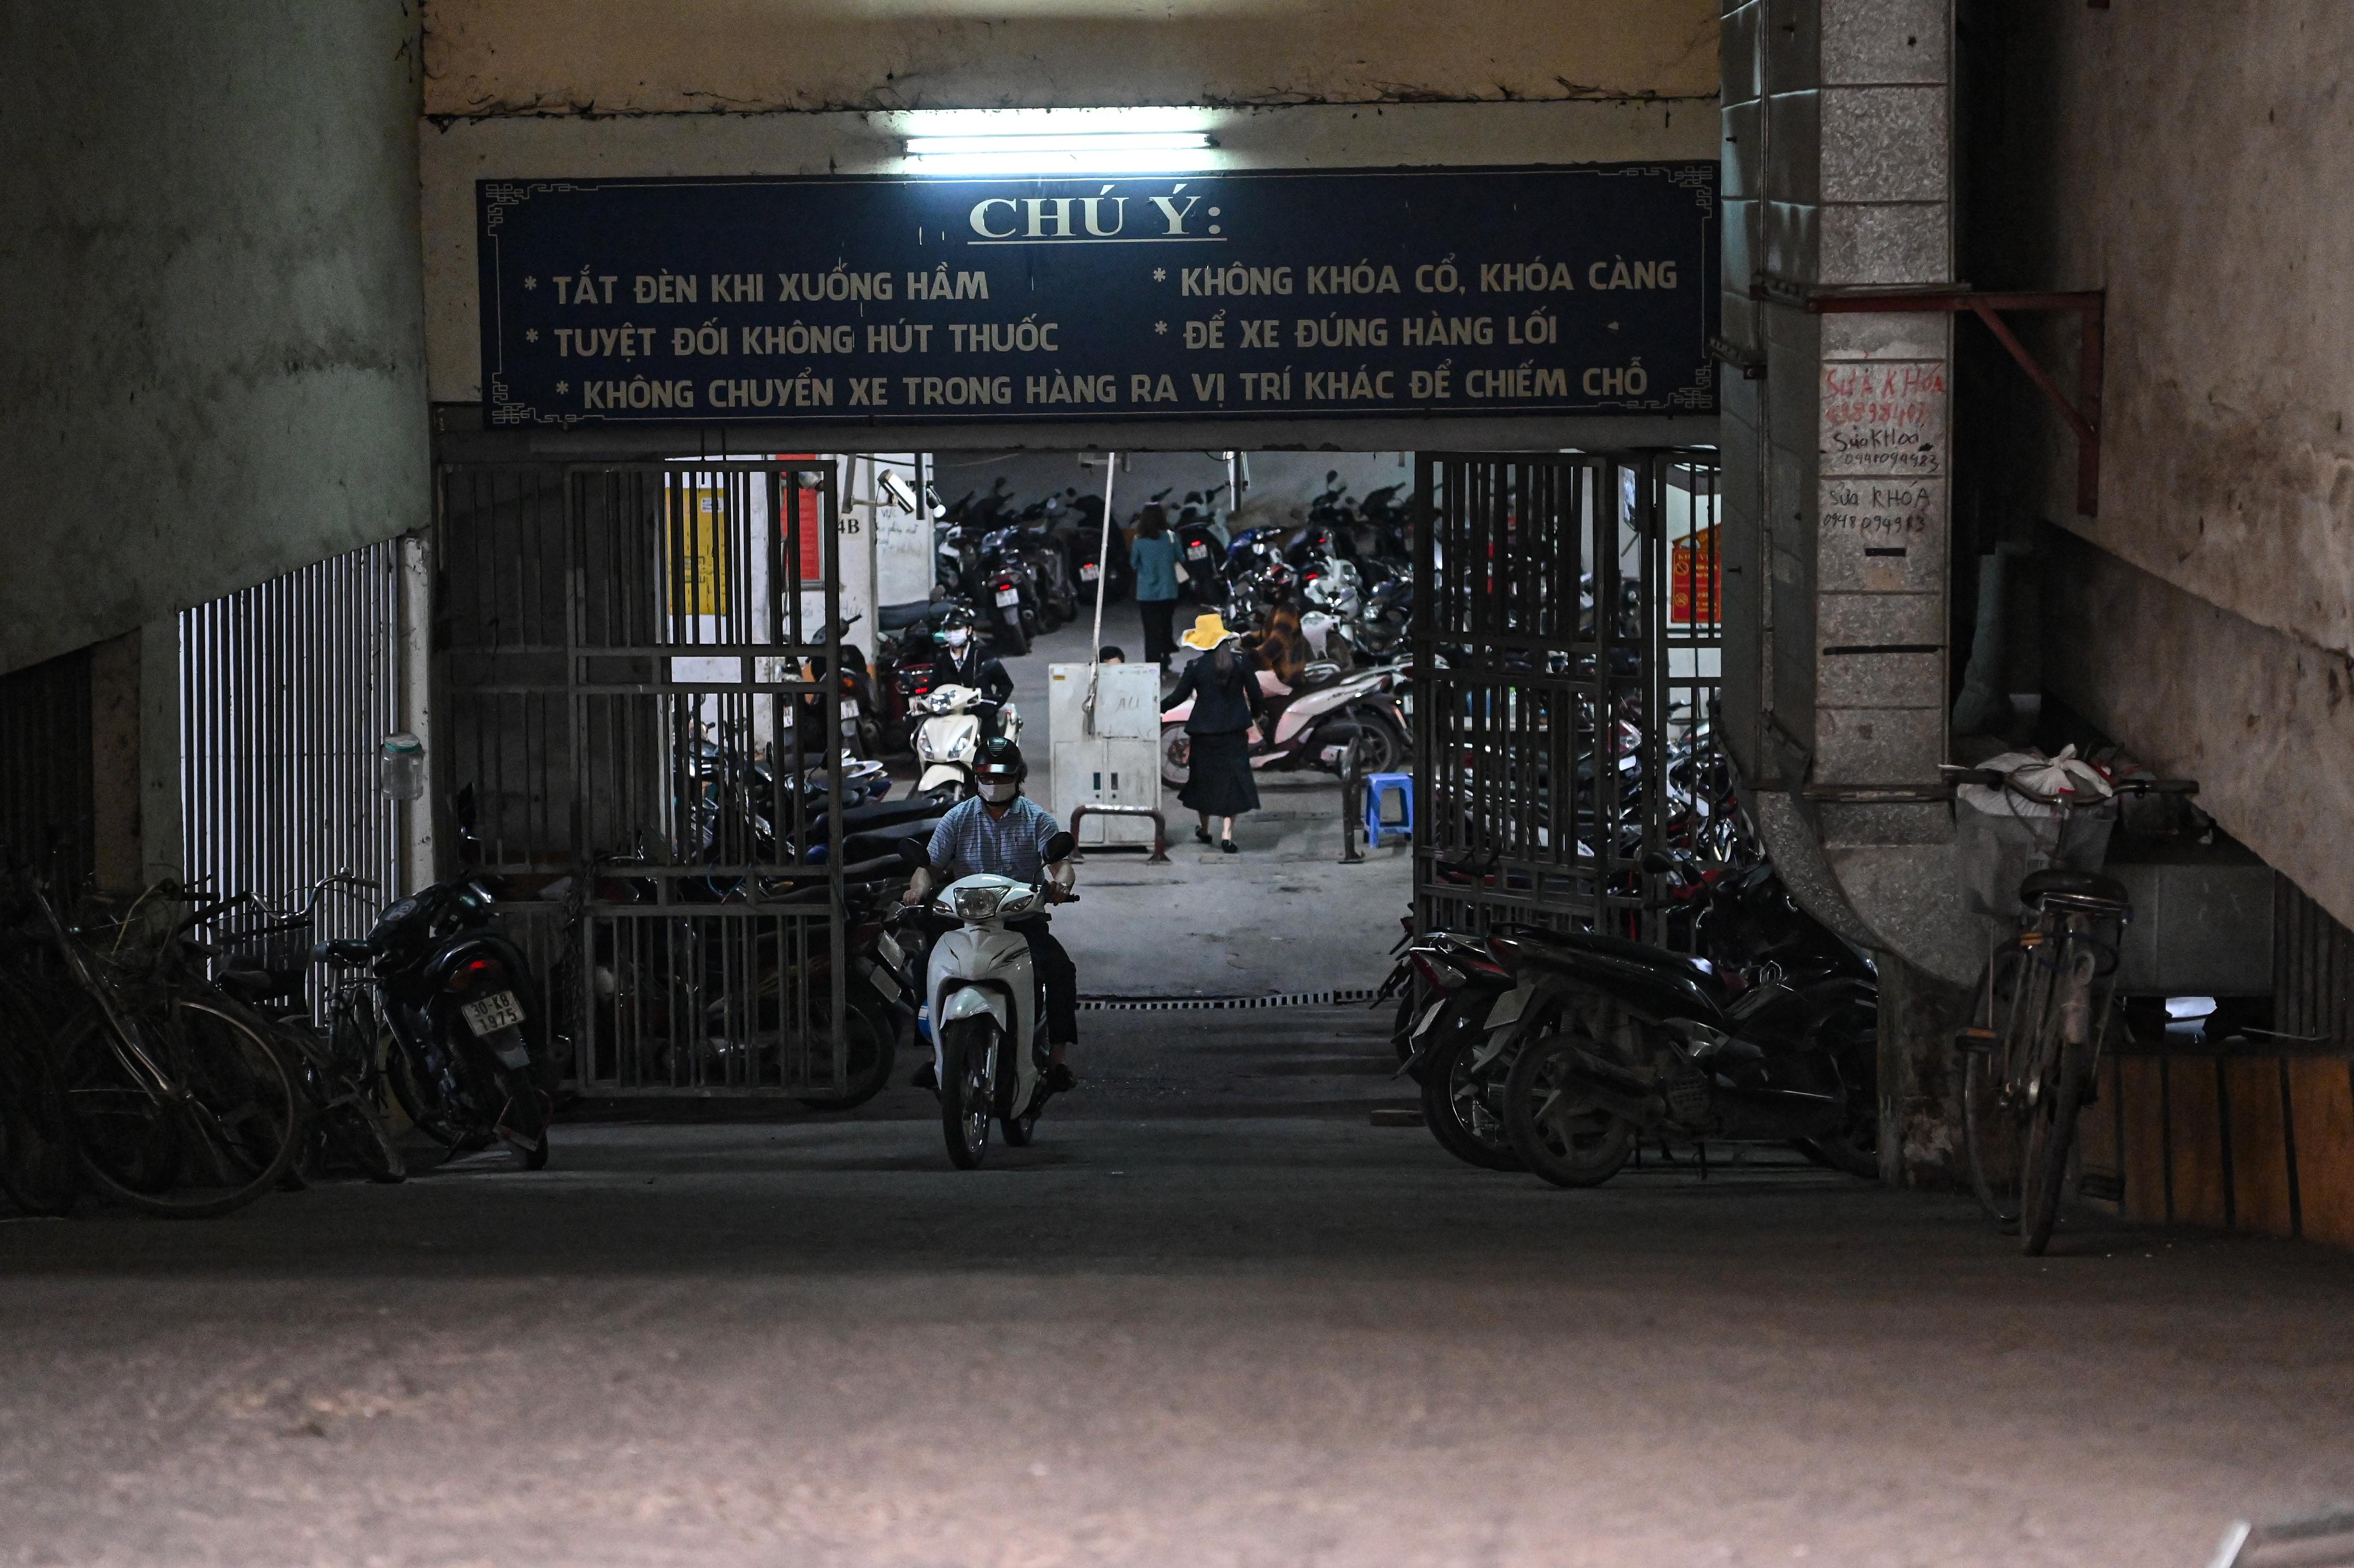 Đỗ xe ở lòng đường Hà Nội, tài xế xếp hàng dài chờ bị xử phạt - ảnh 19